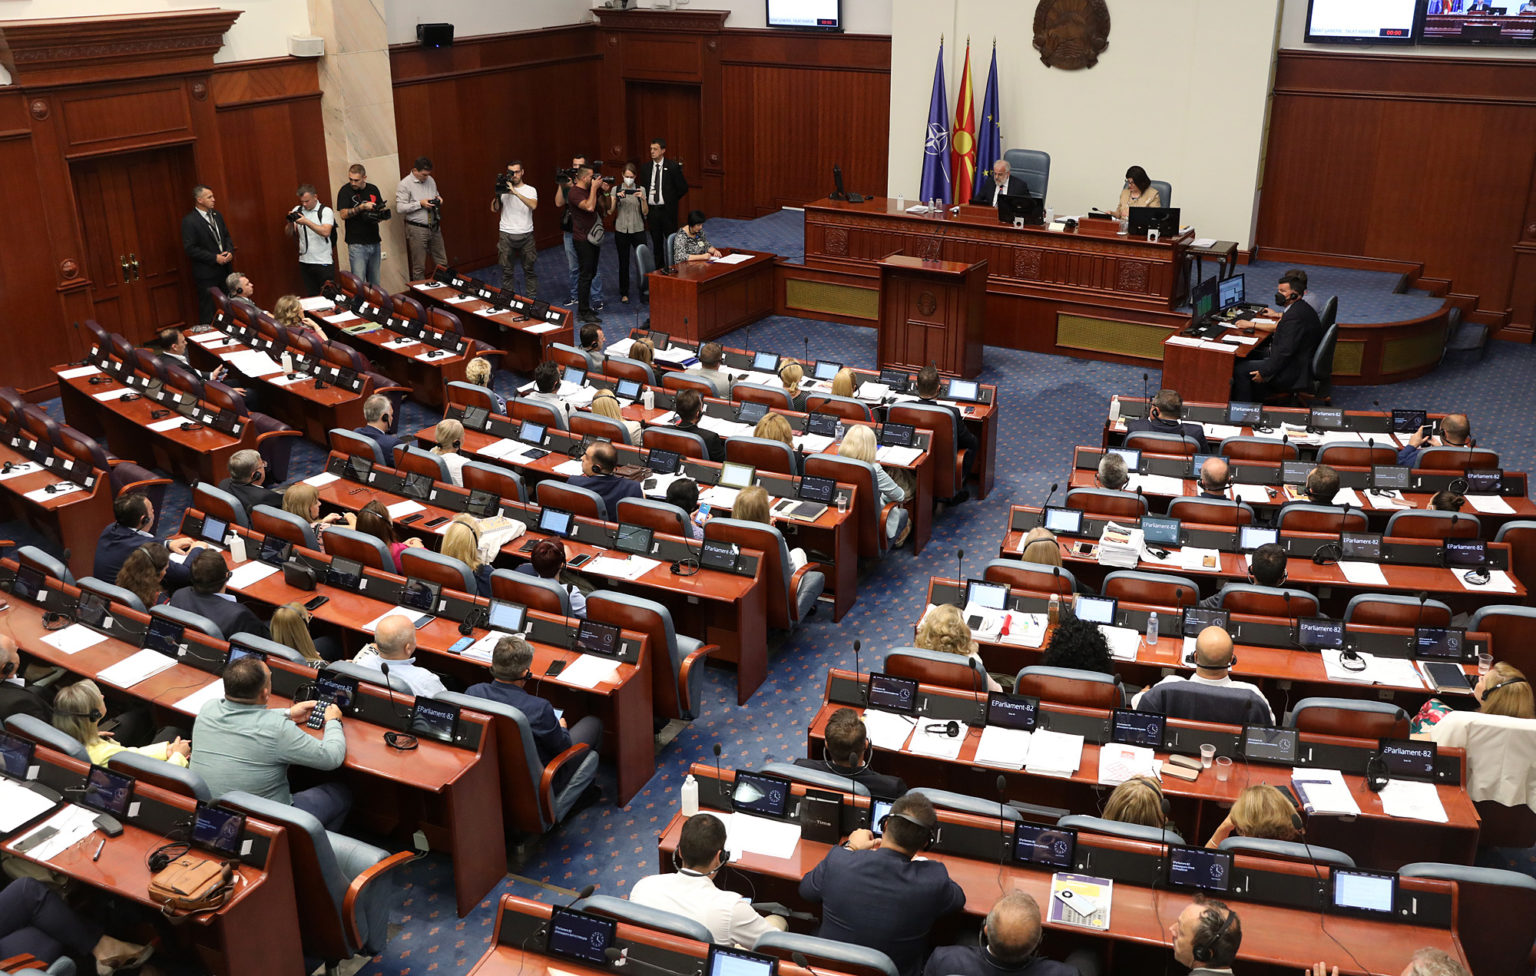 K. Makedonya Meclisi sadece 88 gün çalıştı ve 50 oturum yaptı